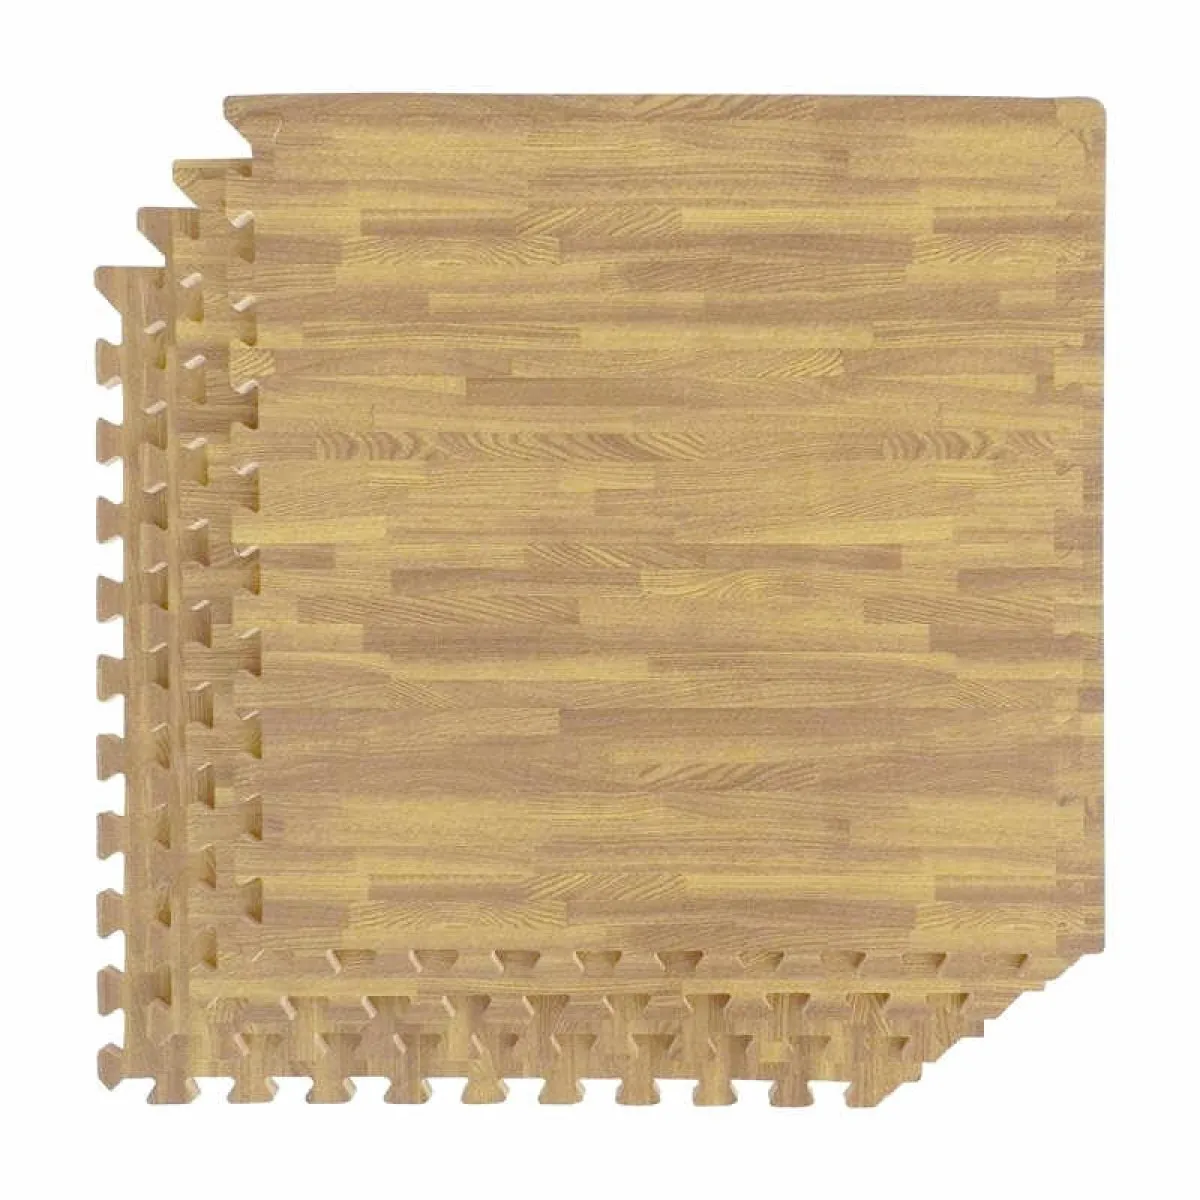 Wood-effect mat set of 4 light brown 60 x 60 x 1.2 cm